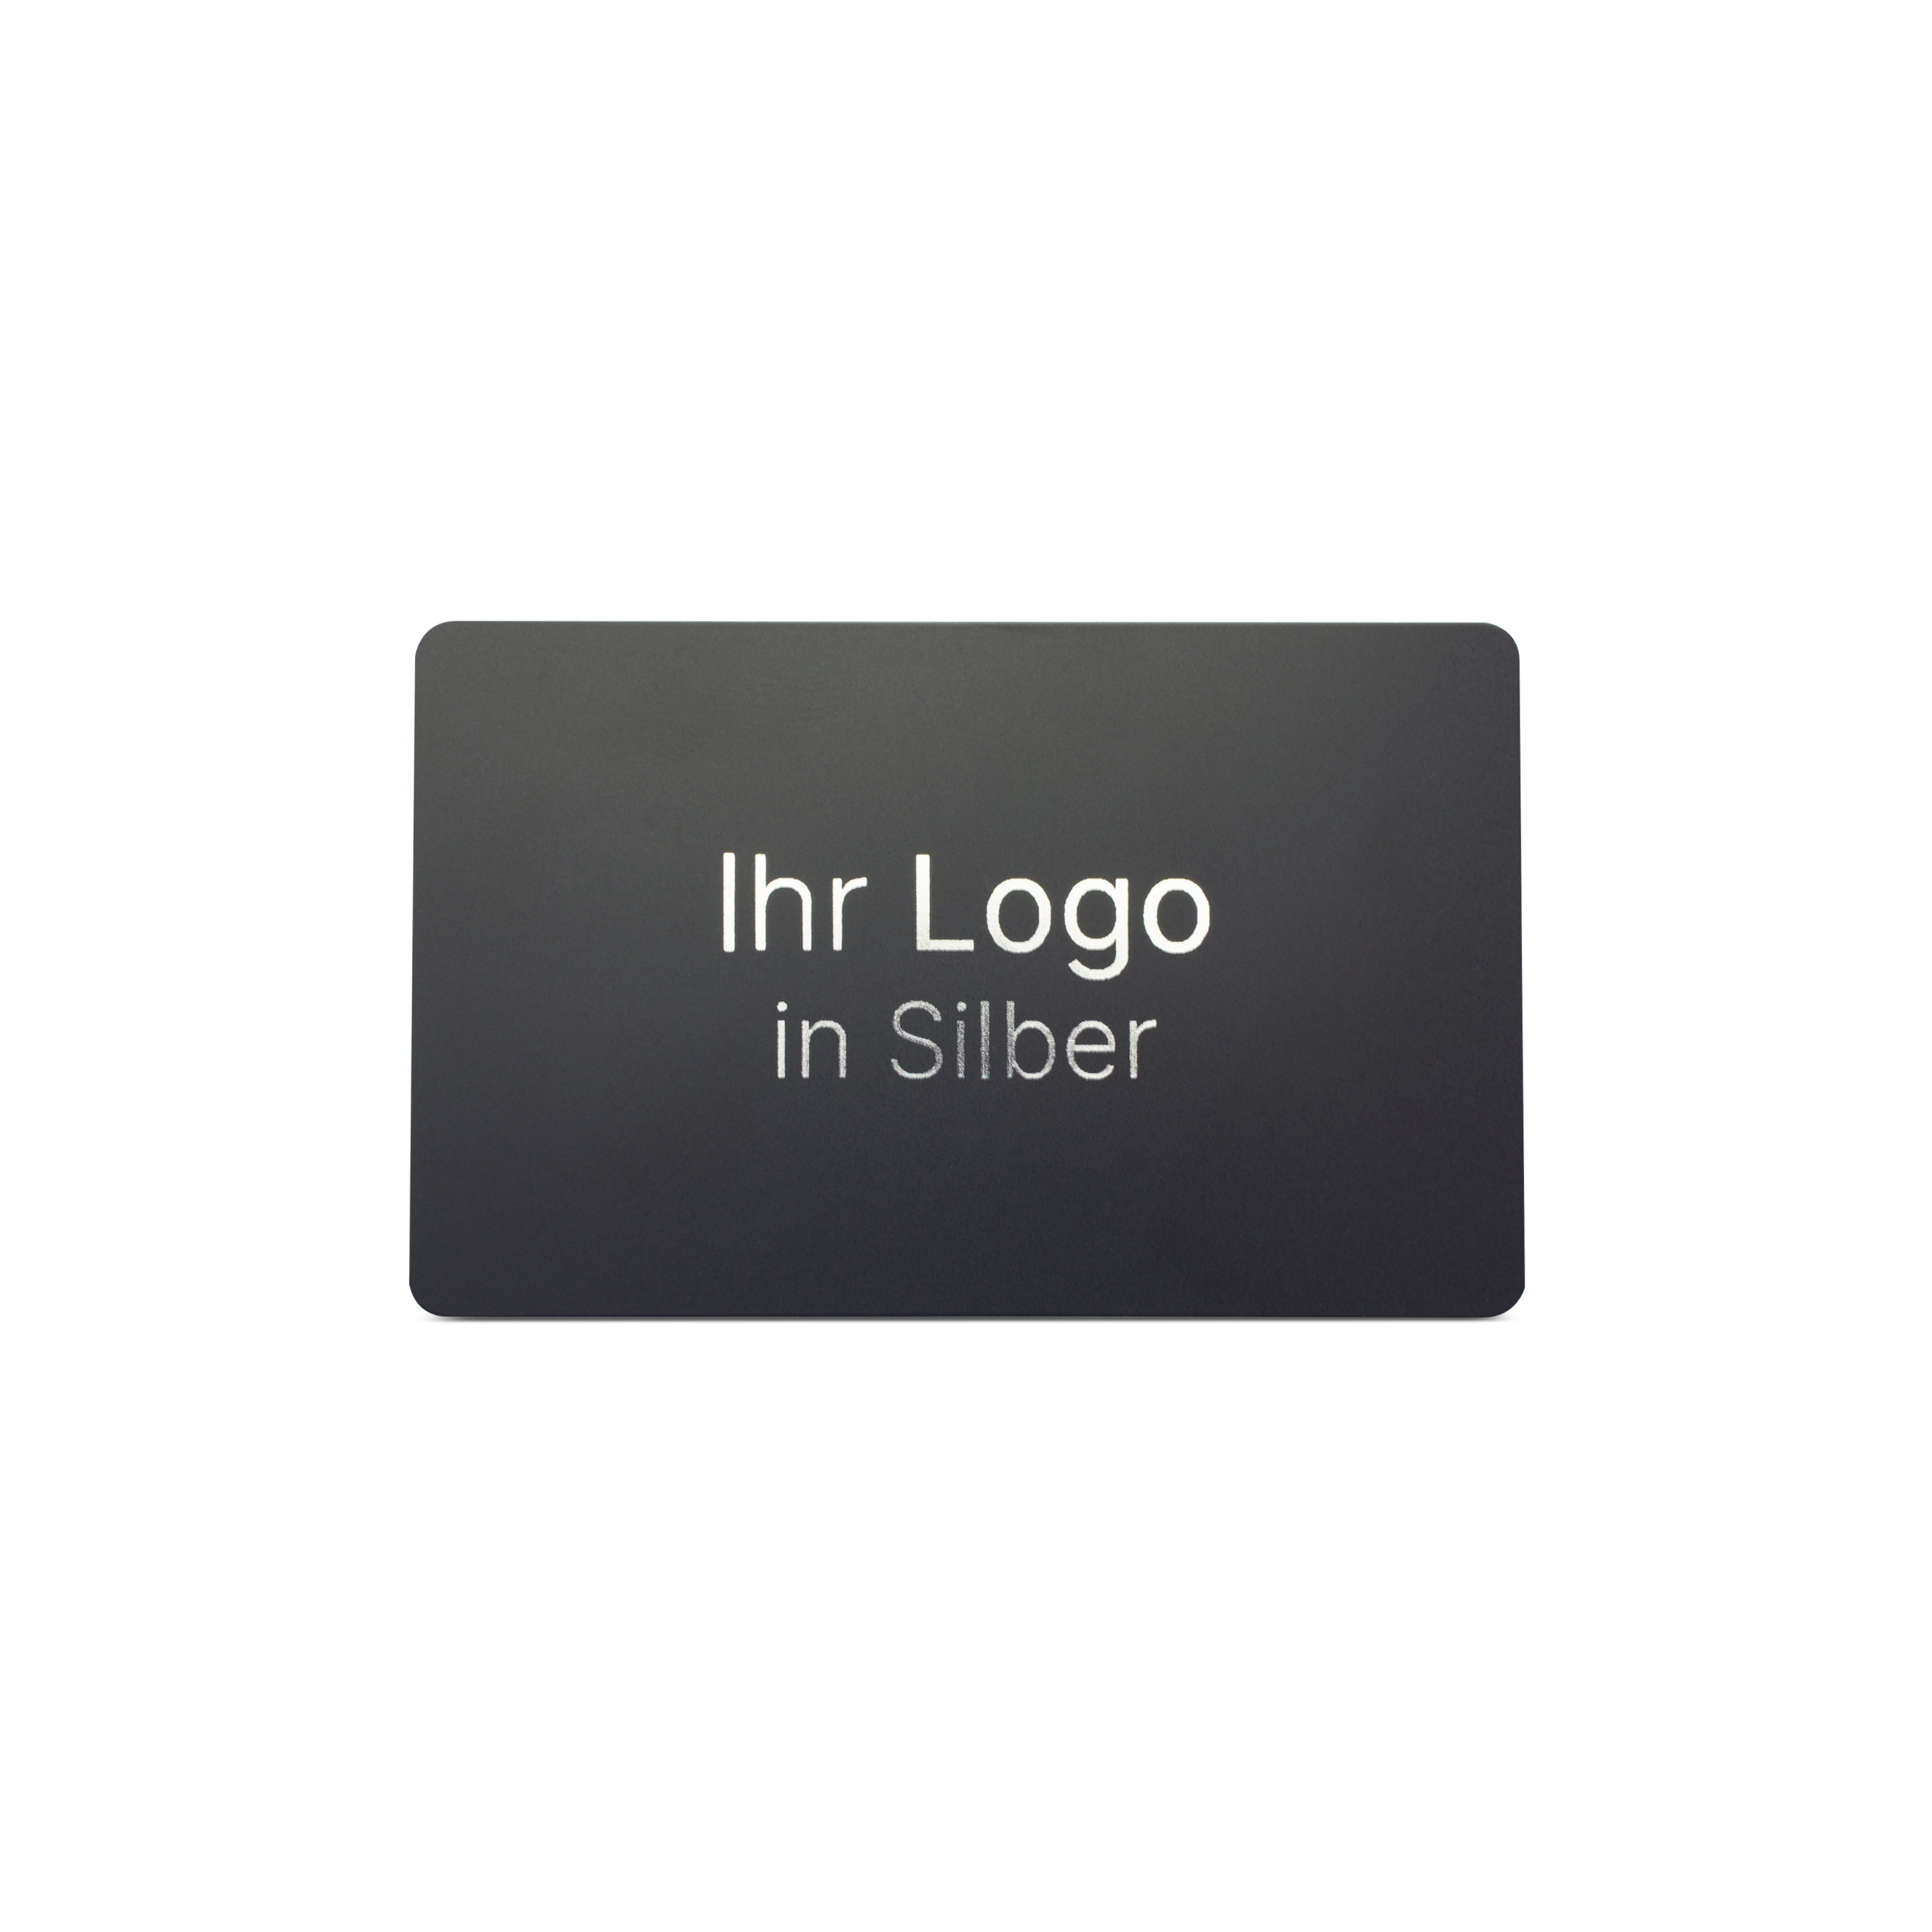 Schwarze NFC Karte aus PVC mit Bedruckung "Ihr Logo in Silber"